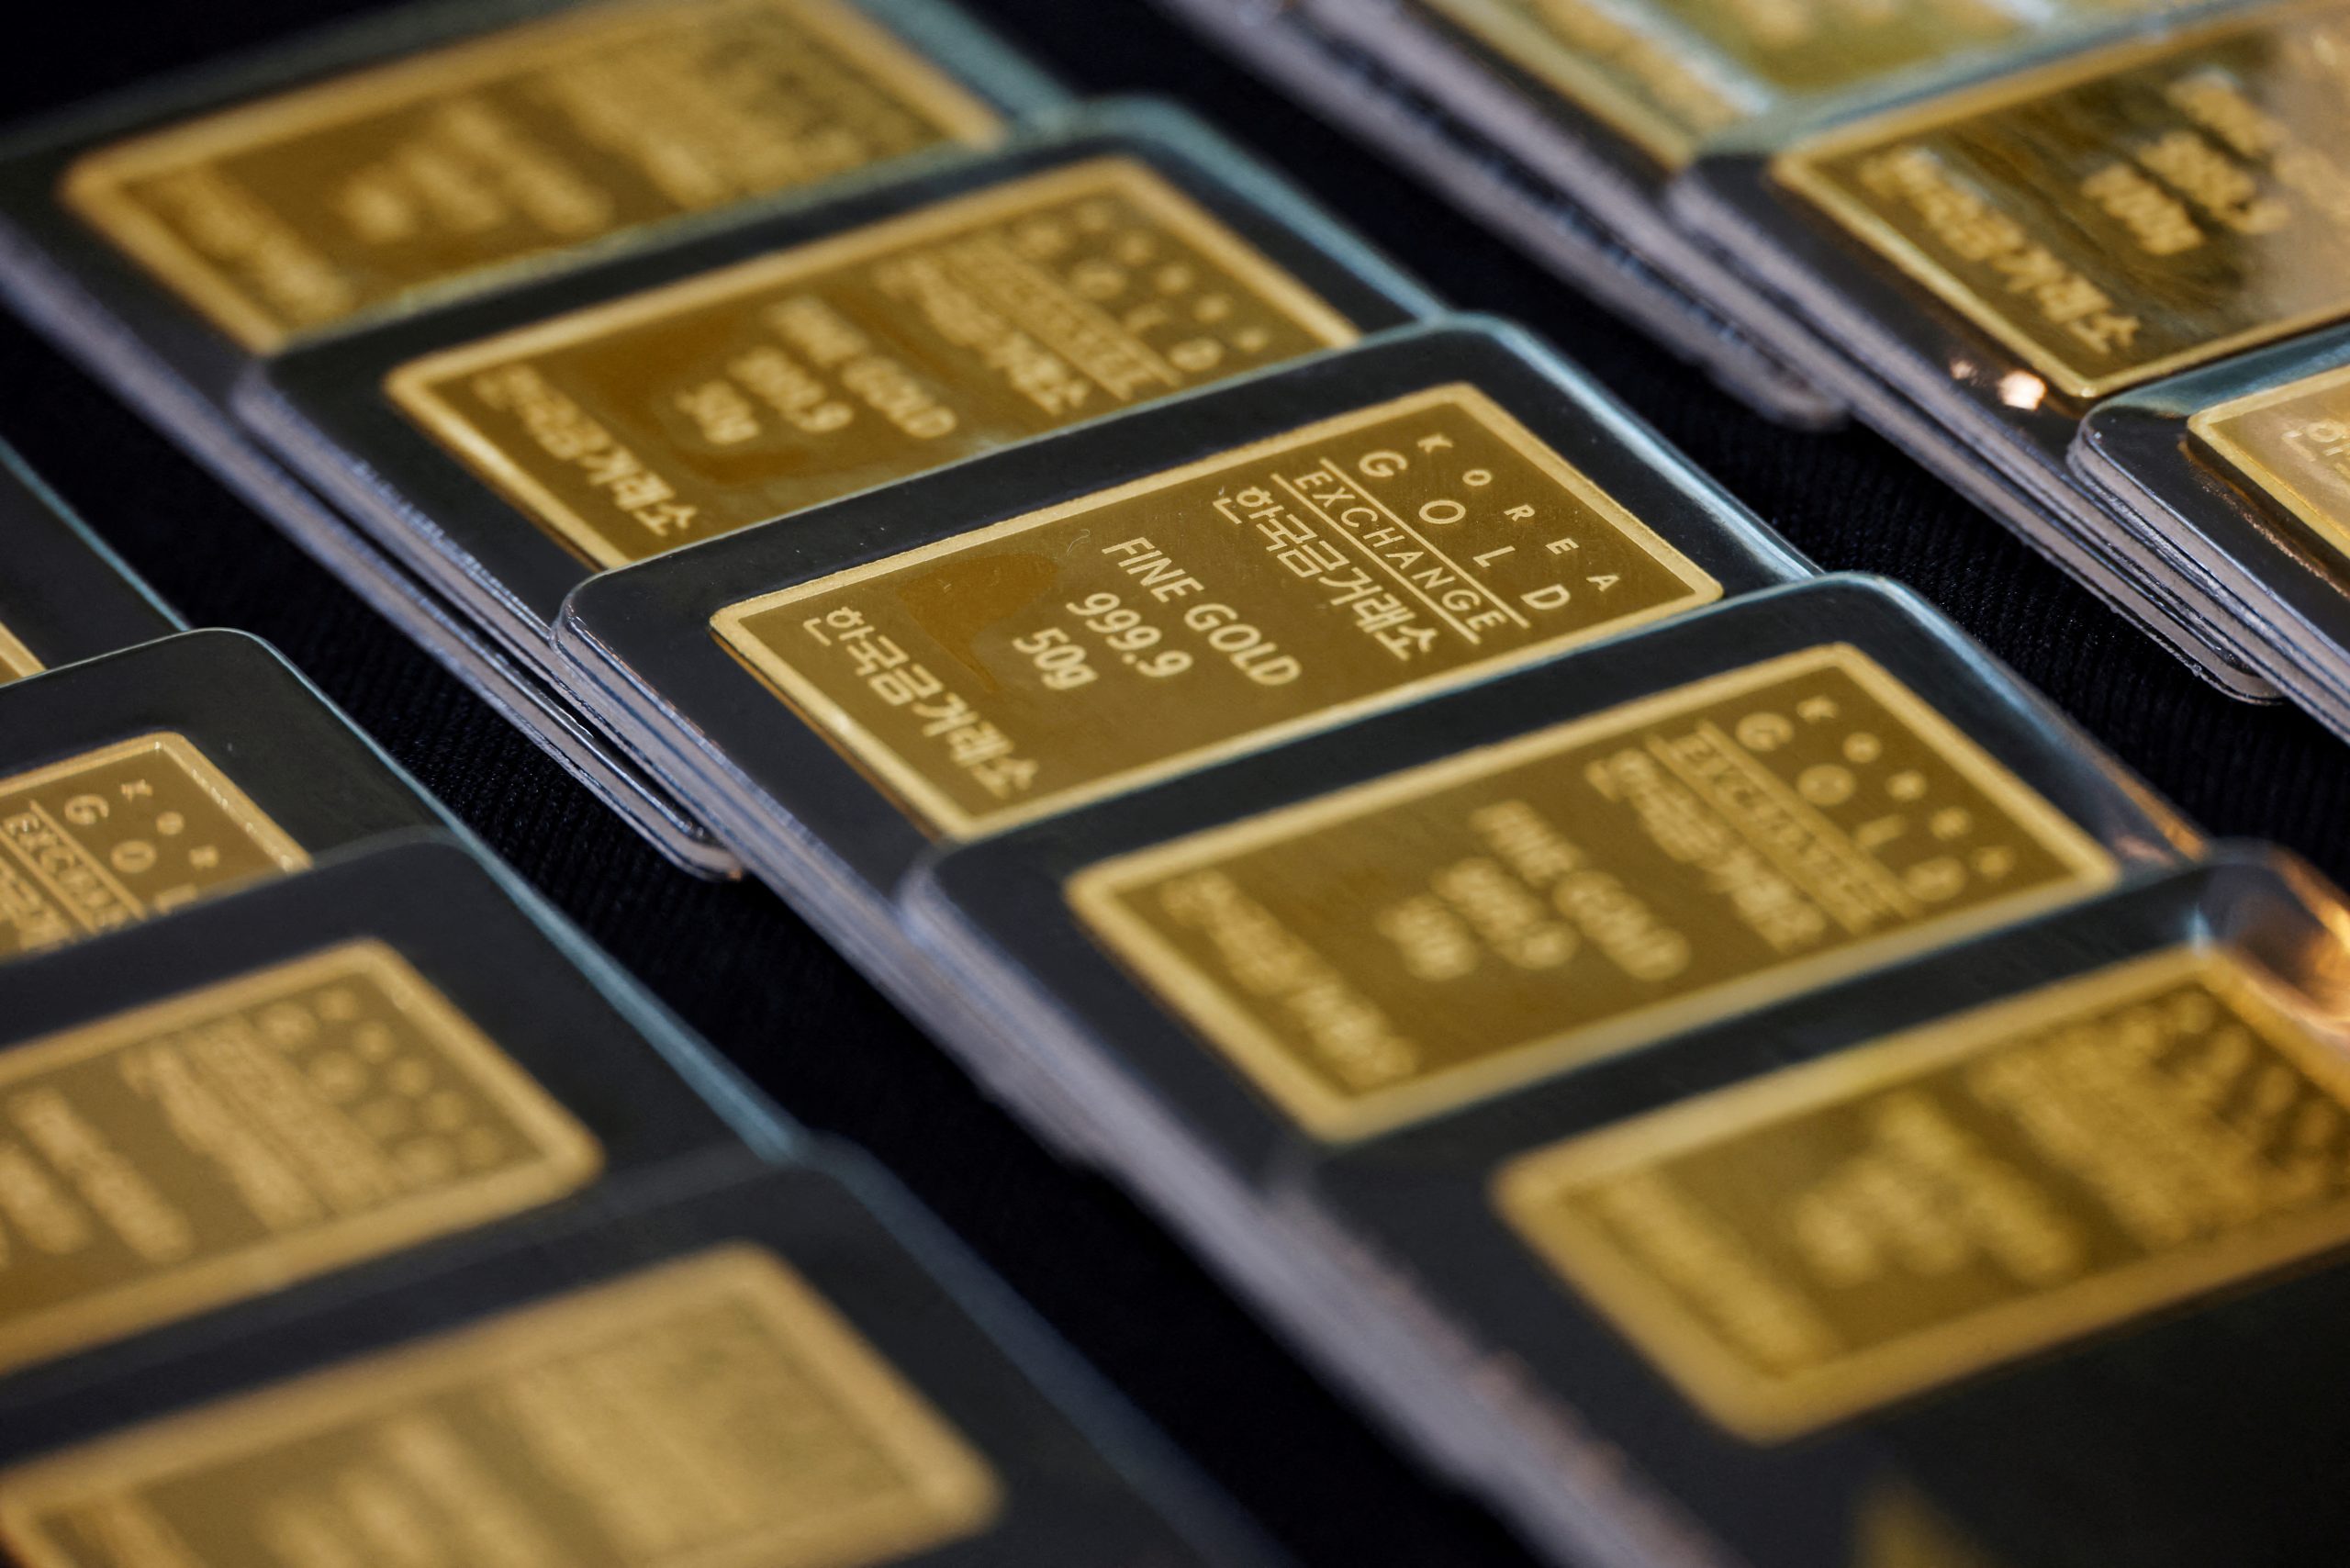 ทองถูกใช้เพื่อเป็นตัวกระจายพอร์ตดีกว่า Bitcoin